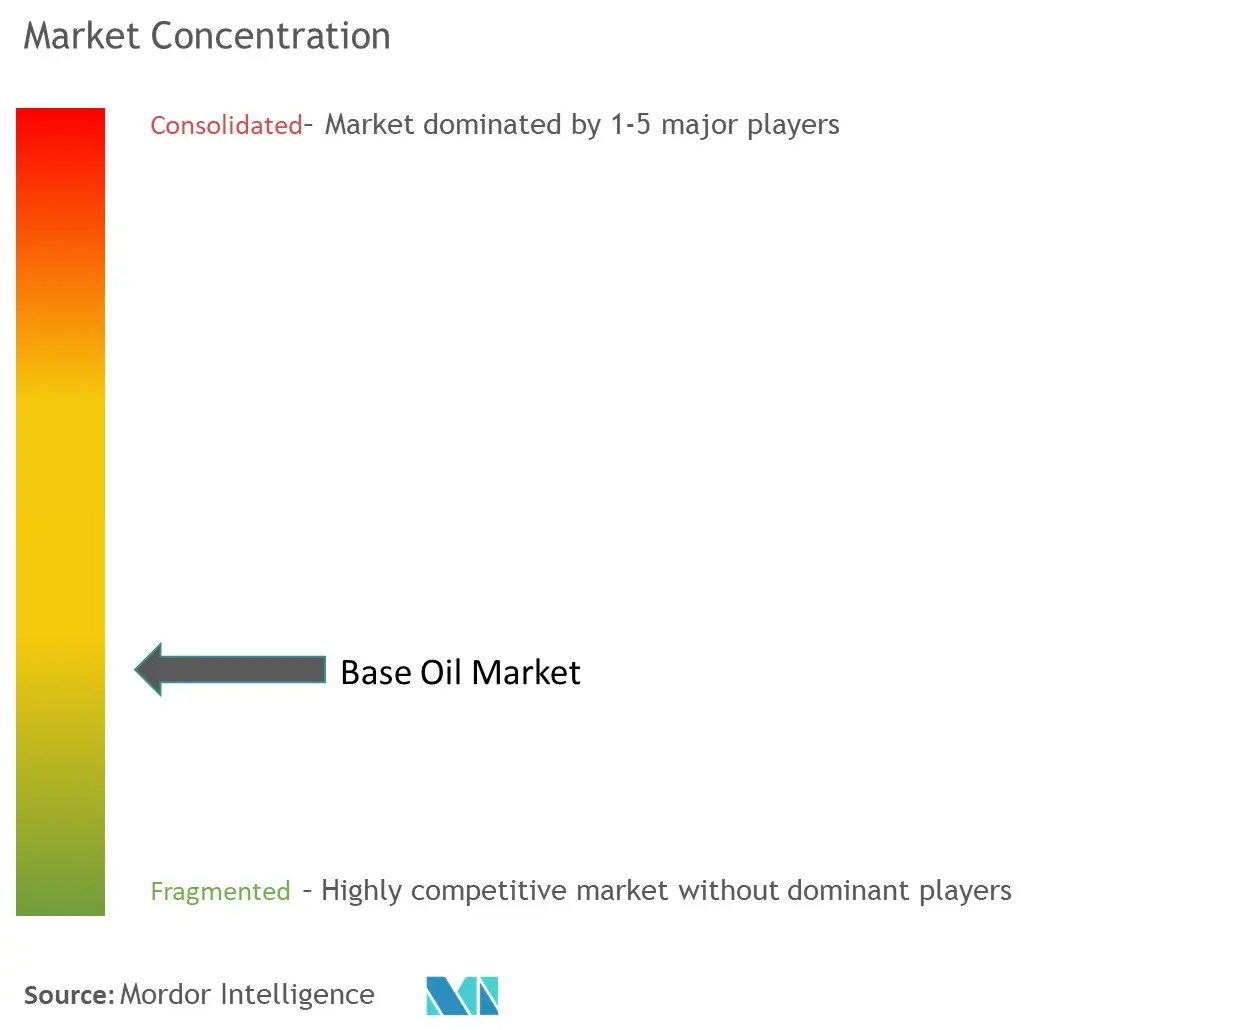 Base Oil Market Concentration